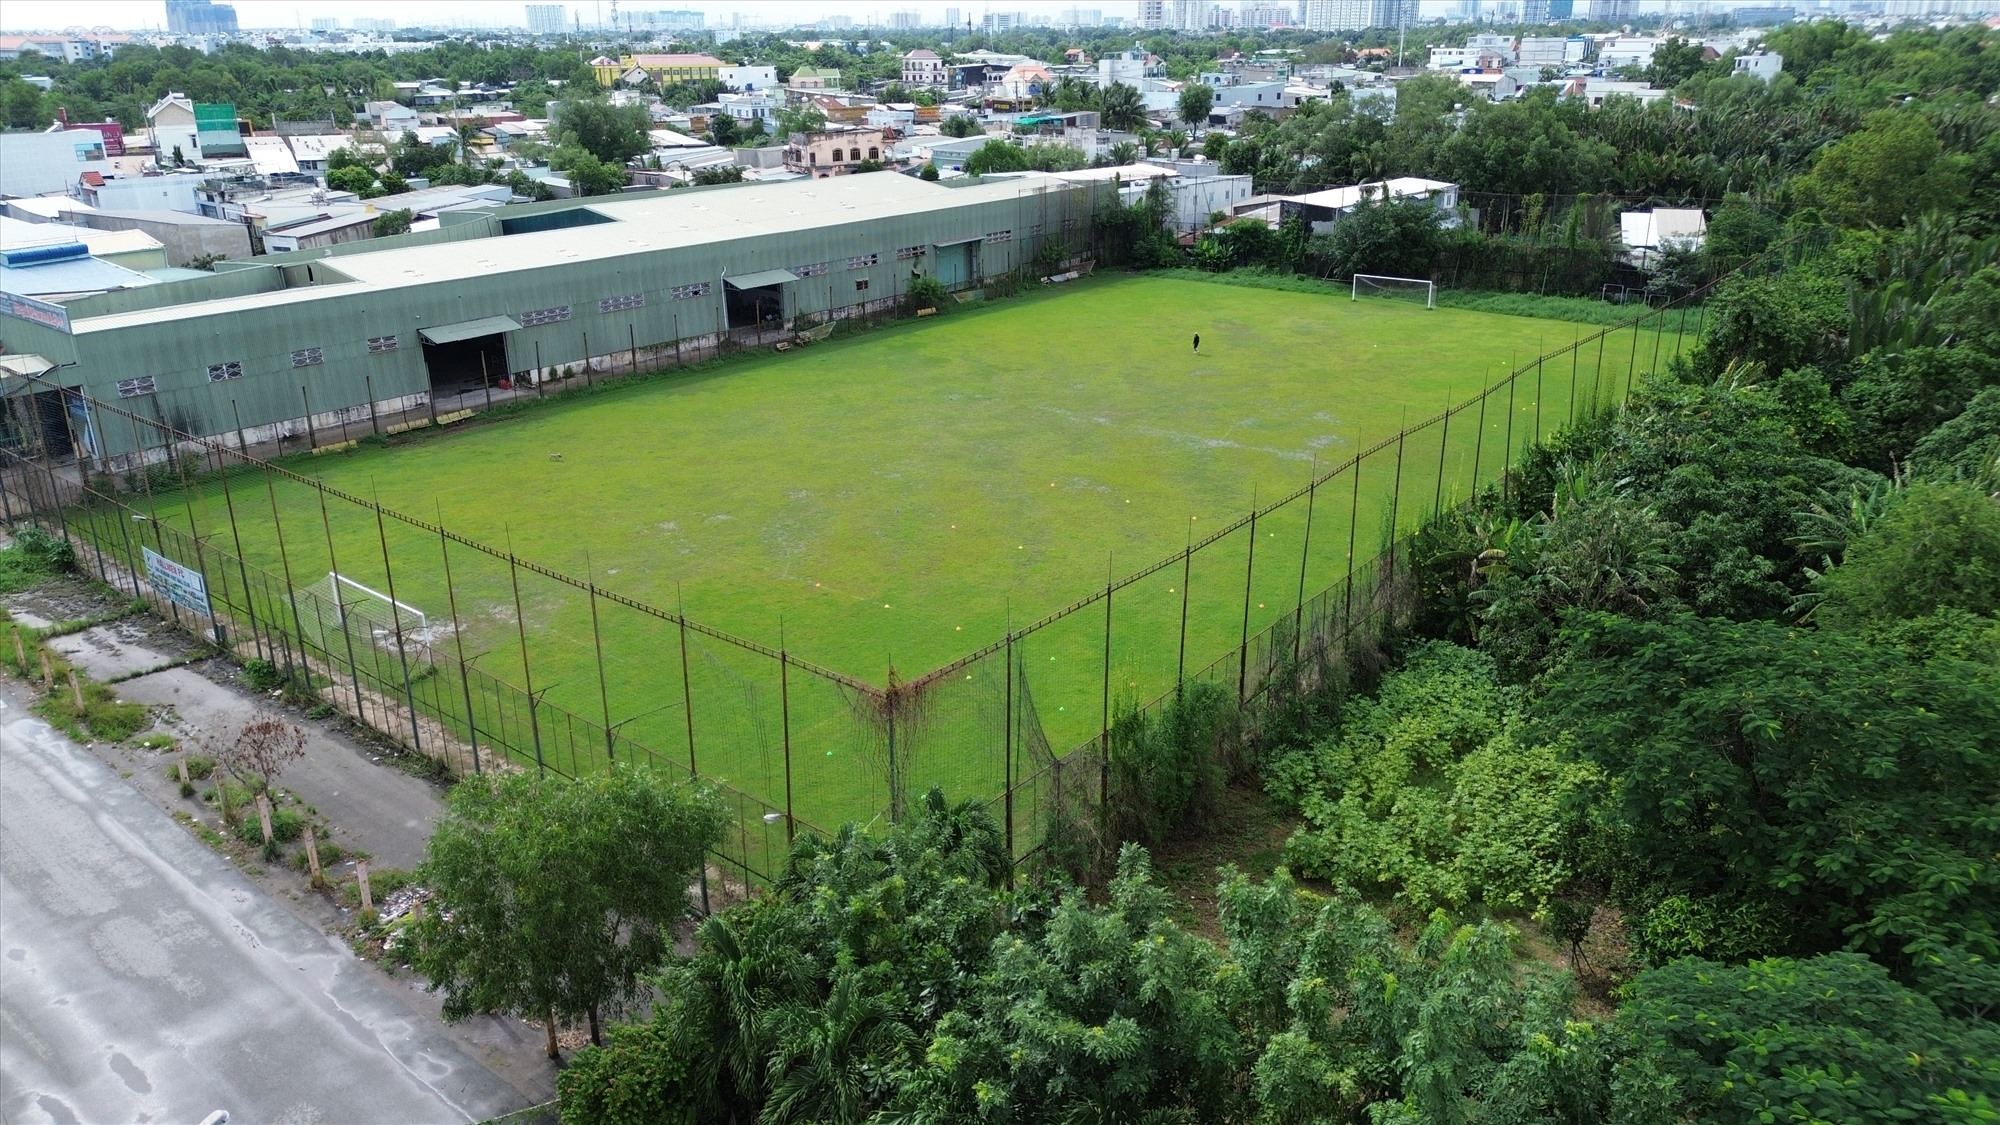 Hiện tại, Trung tâm thể thao Thành Long vẫn còn 5 sân bóng với mặt cỏ tươi tốt. Những sân bóng này chủ yếu được cho các đội bóng phòng trào thuê hay các câu lạc bộ có kinh phí thấp thuê làm nơi tập luyện.